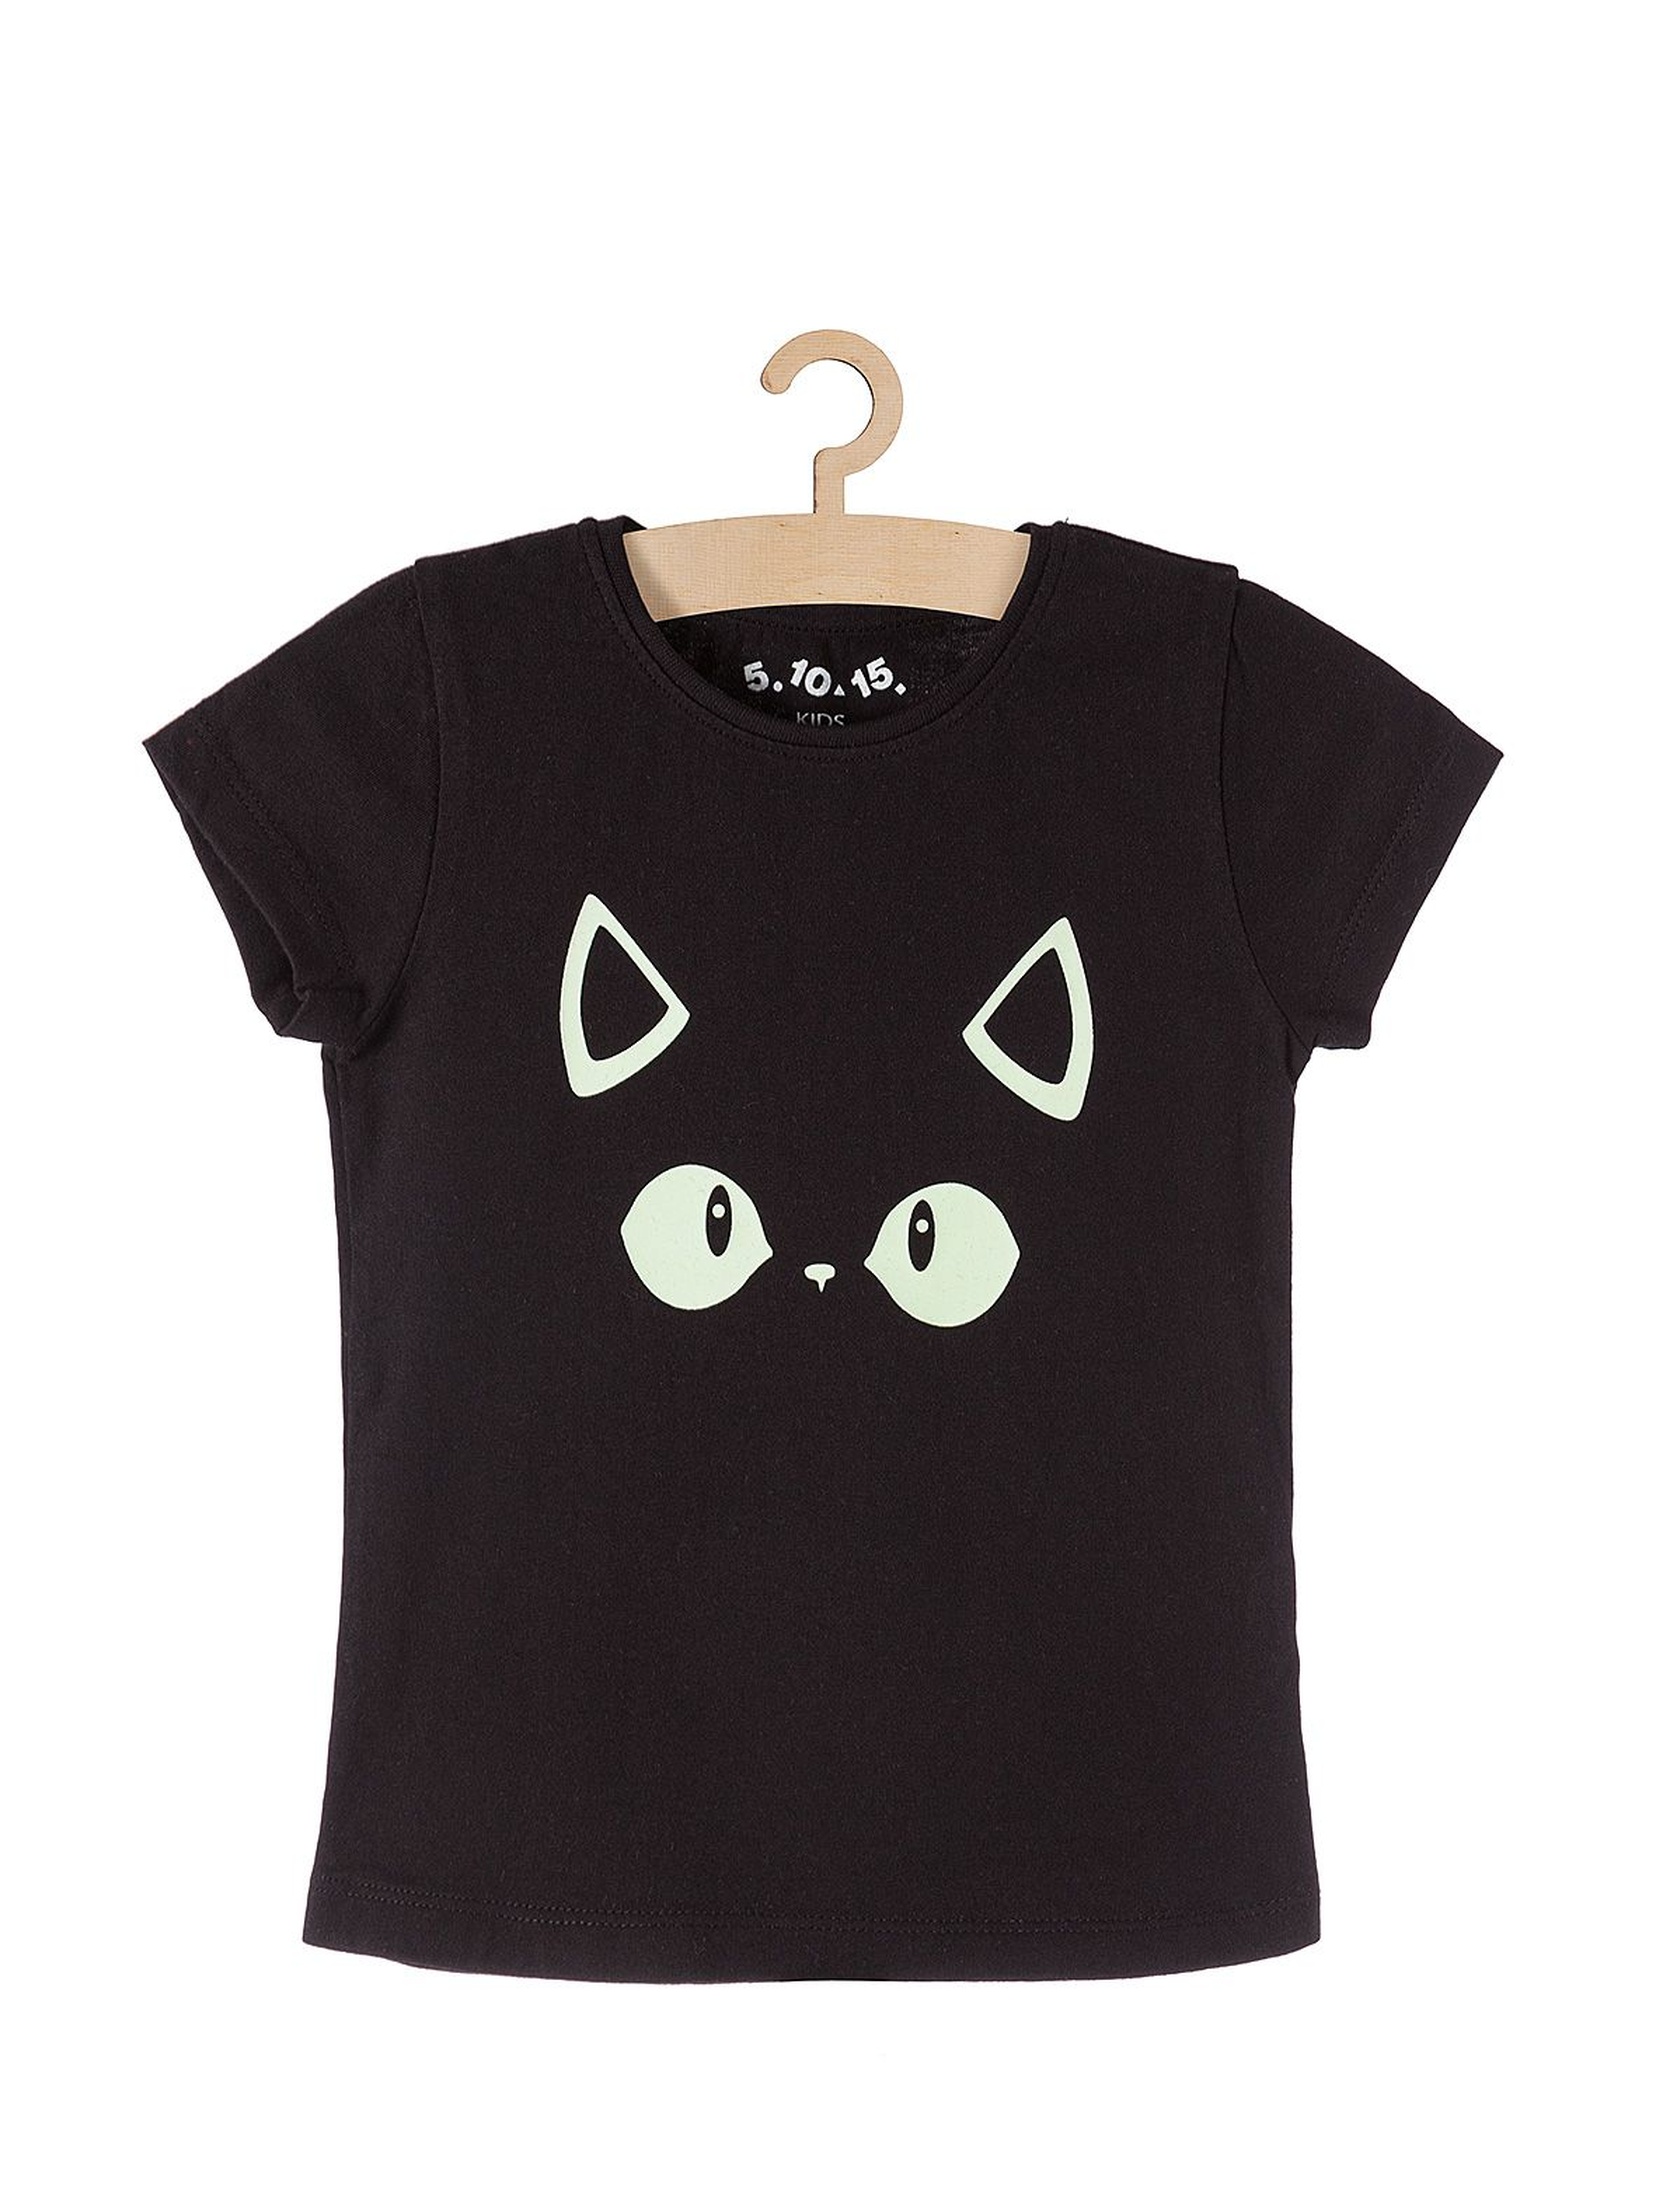 T-shirt dziewczęcy czarny z oczami kota- świeci w ciemności